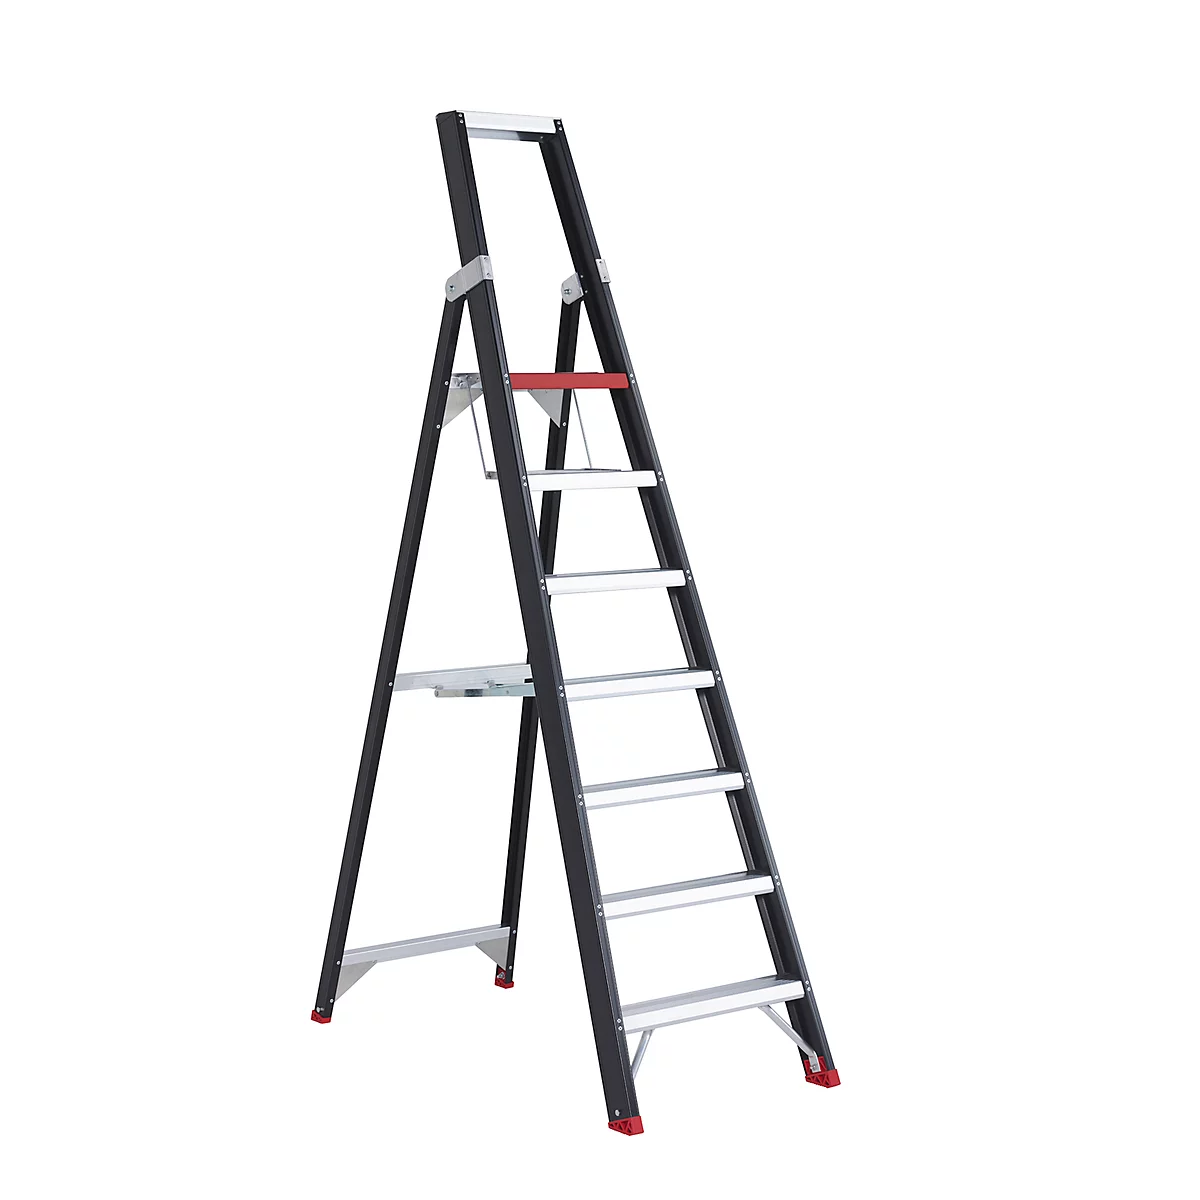 Escalera de tijera Professional Topline, unilateral, aluminio, 7 escalones, negro